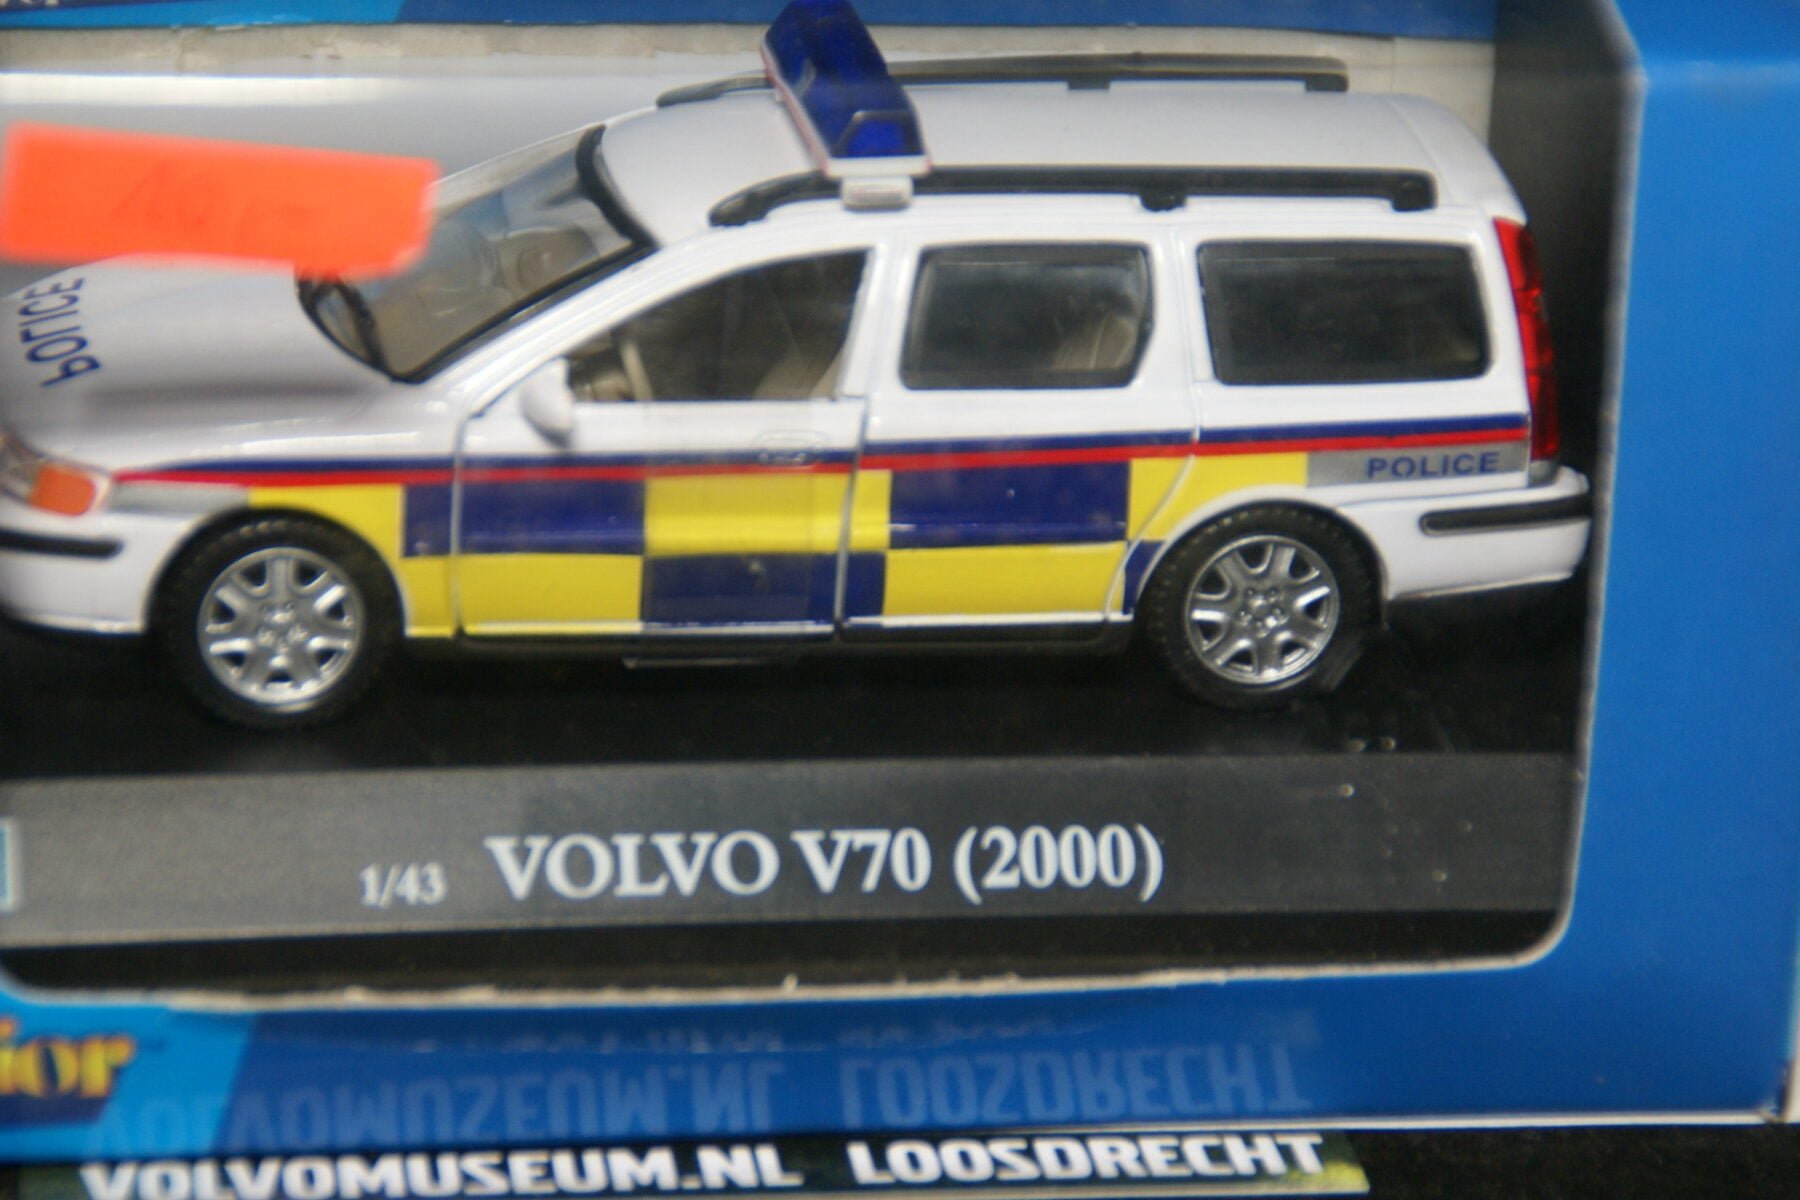 DSC02853 miniatuur 2000 Volvo V70 police wit geel blauw 1op43 Brio  020273 MB